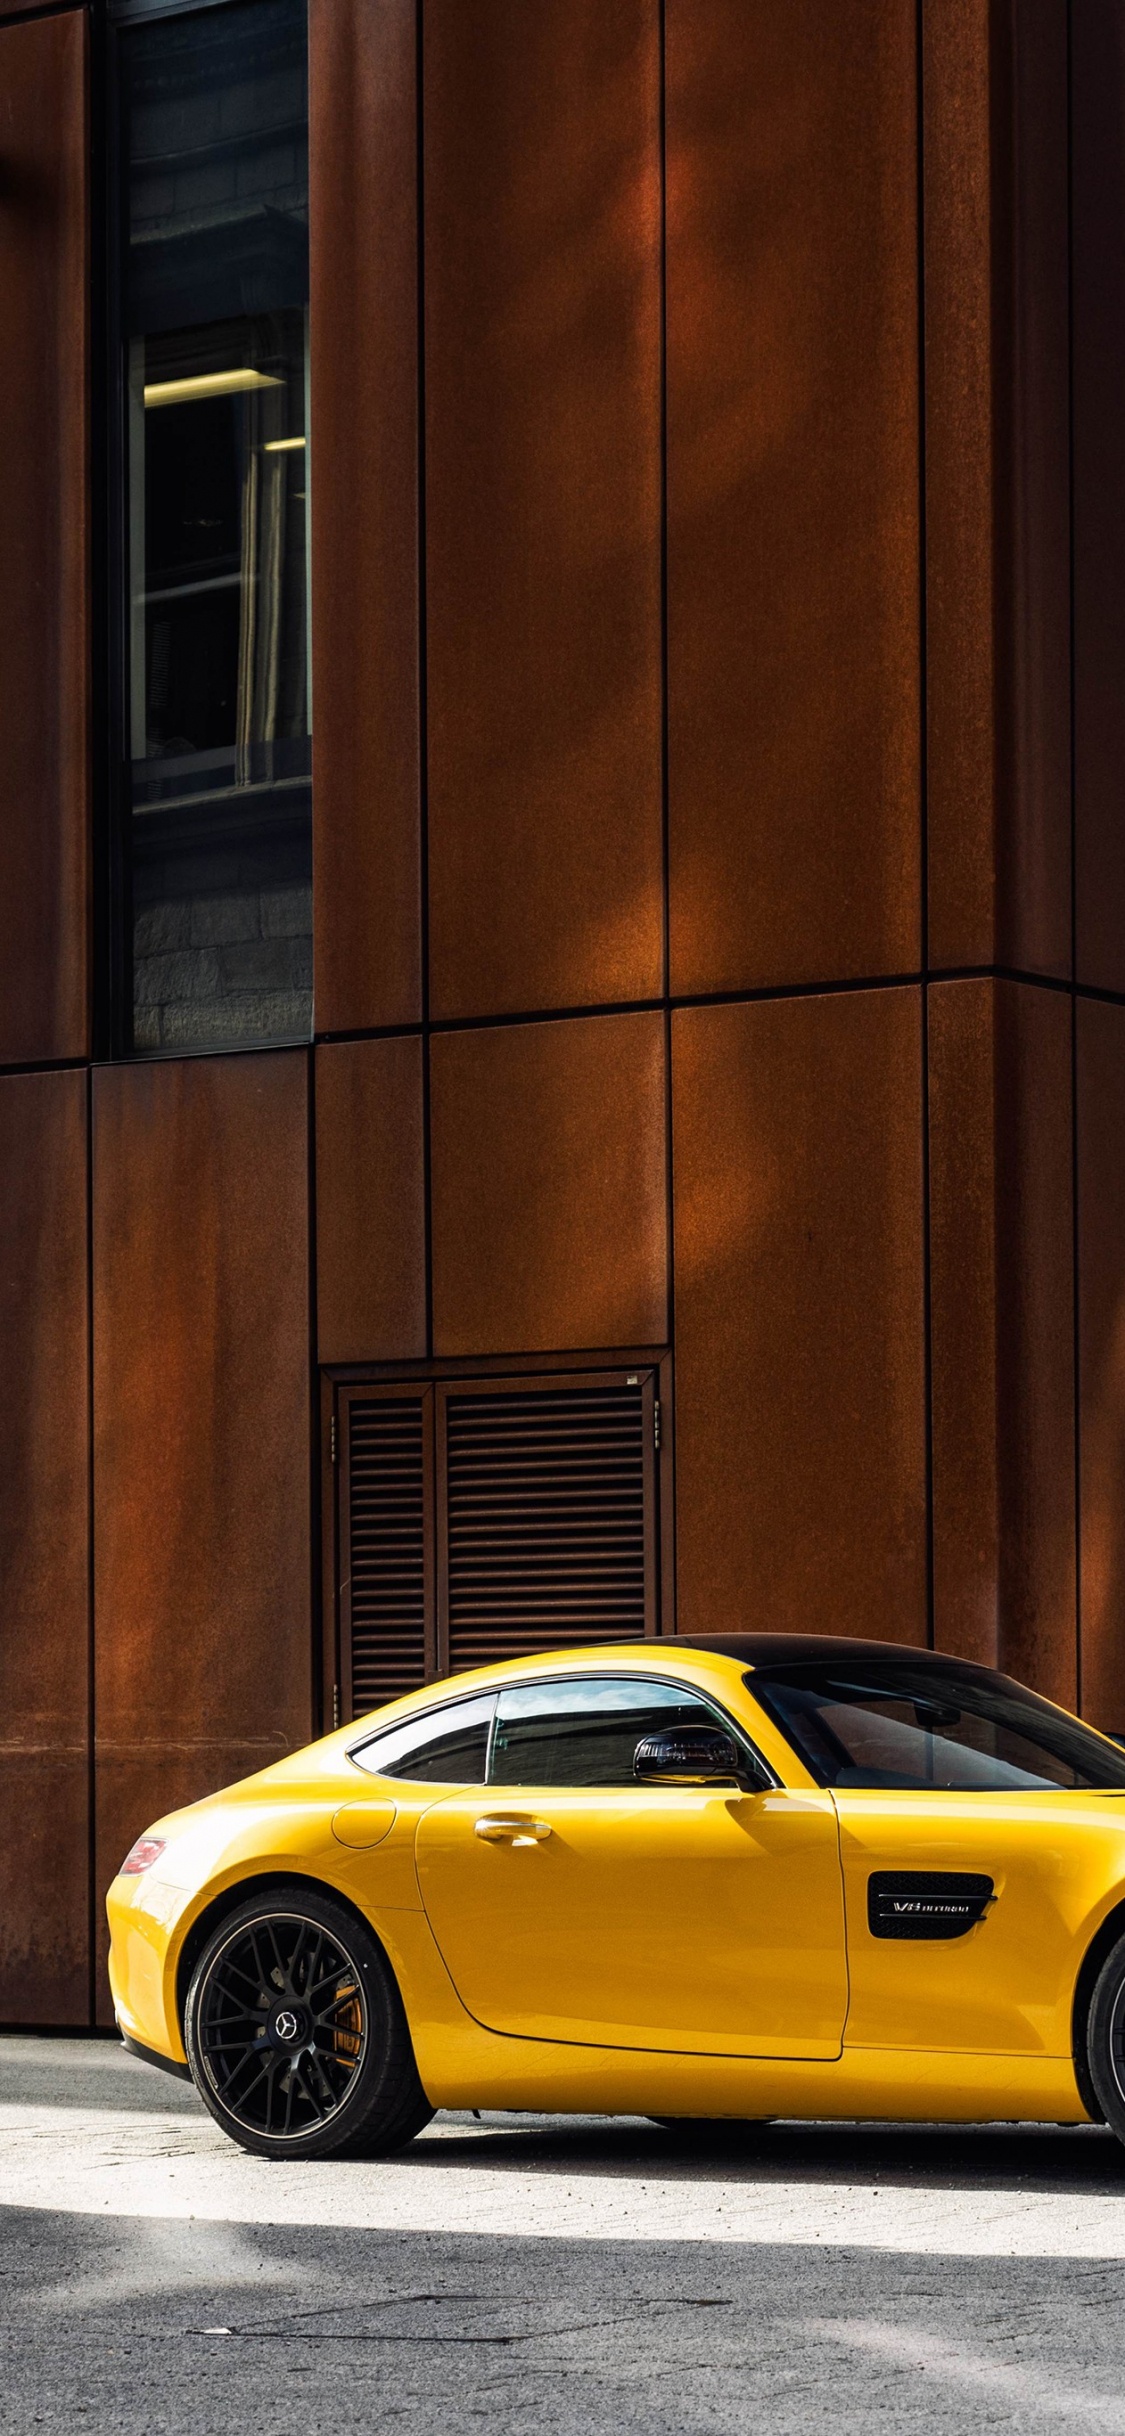 Porsche 911 Jaune Garée à Côté D'un Bâtiment en Béton Brun Pendant la Journée. Wallpaper in 1125x2436 Resolution